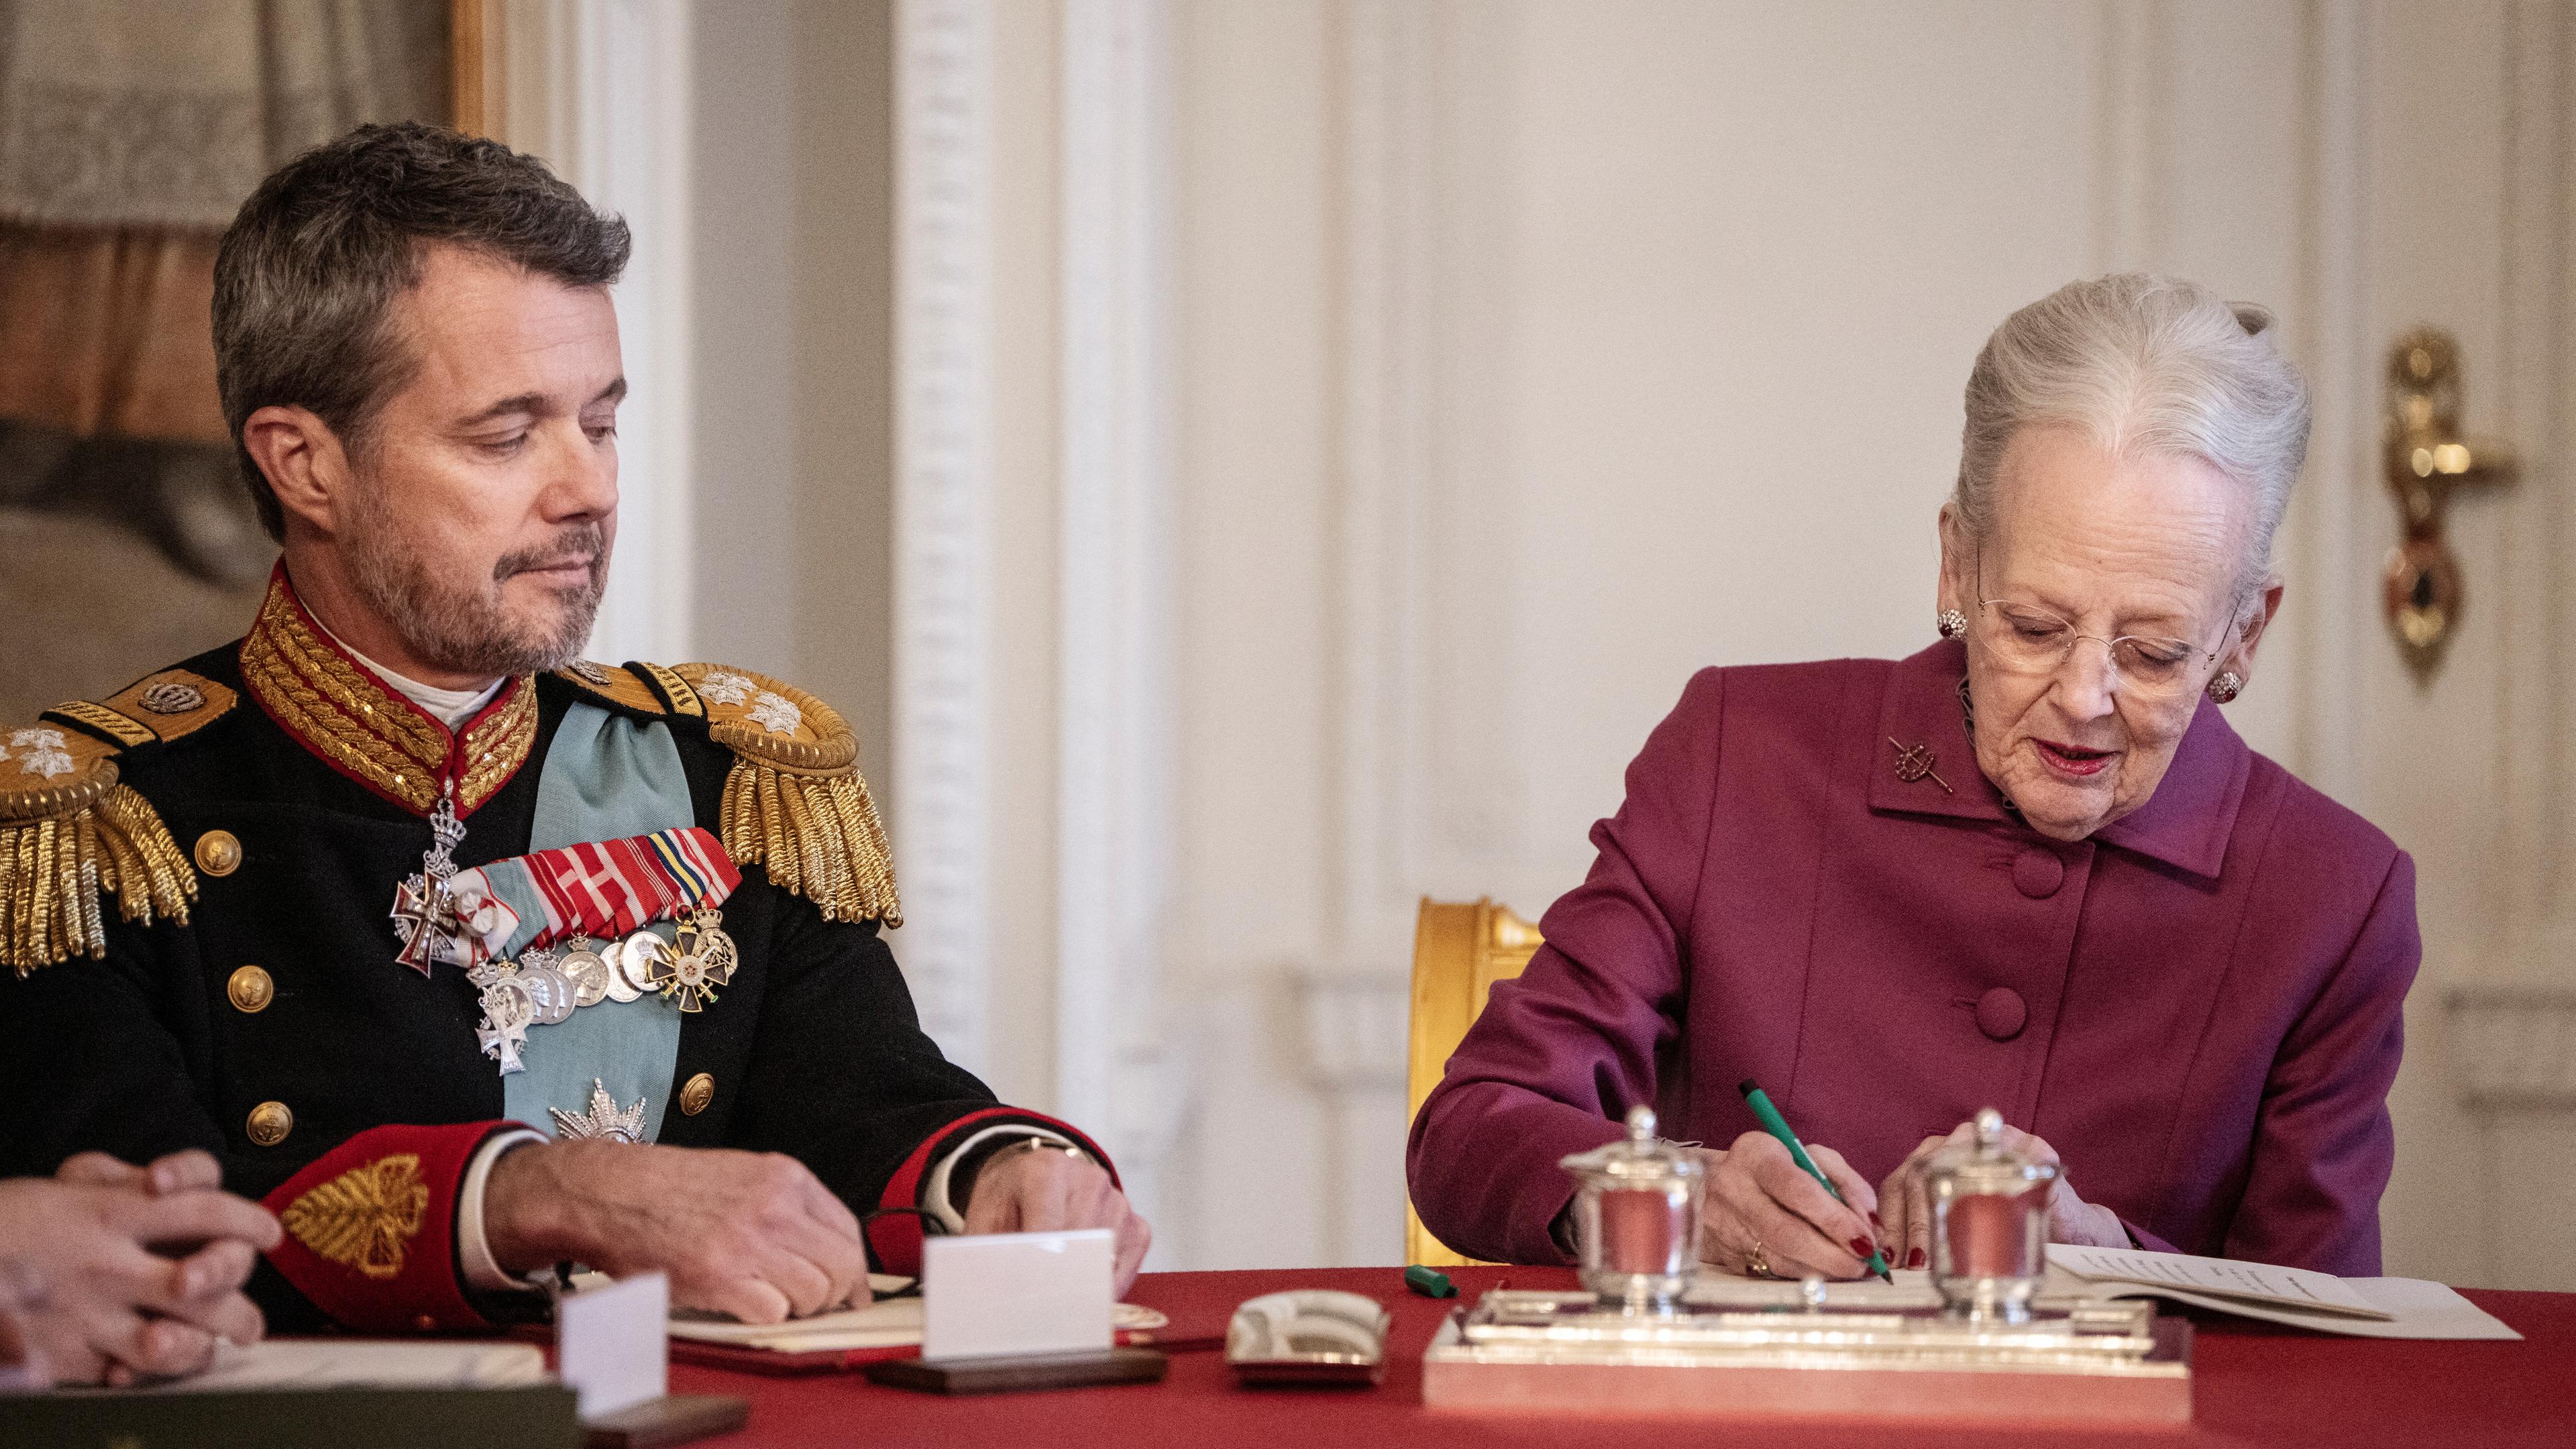 Dänemarks Königin Margrethe unterzeichnet im Staatsrat von Schloss Christiansborg nach 52 Jahren Regierungszeit eine Abdankungserklärung. 